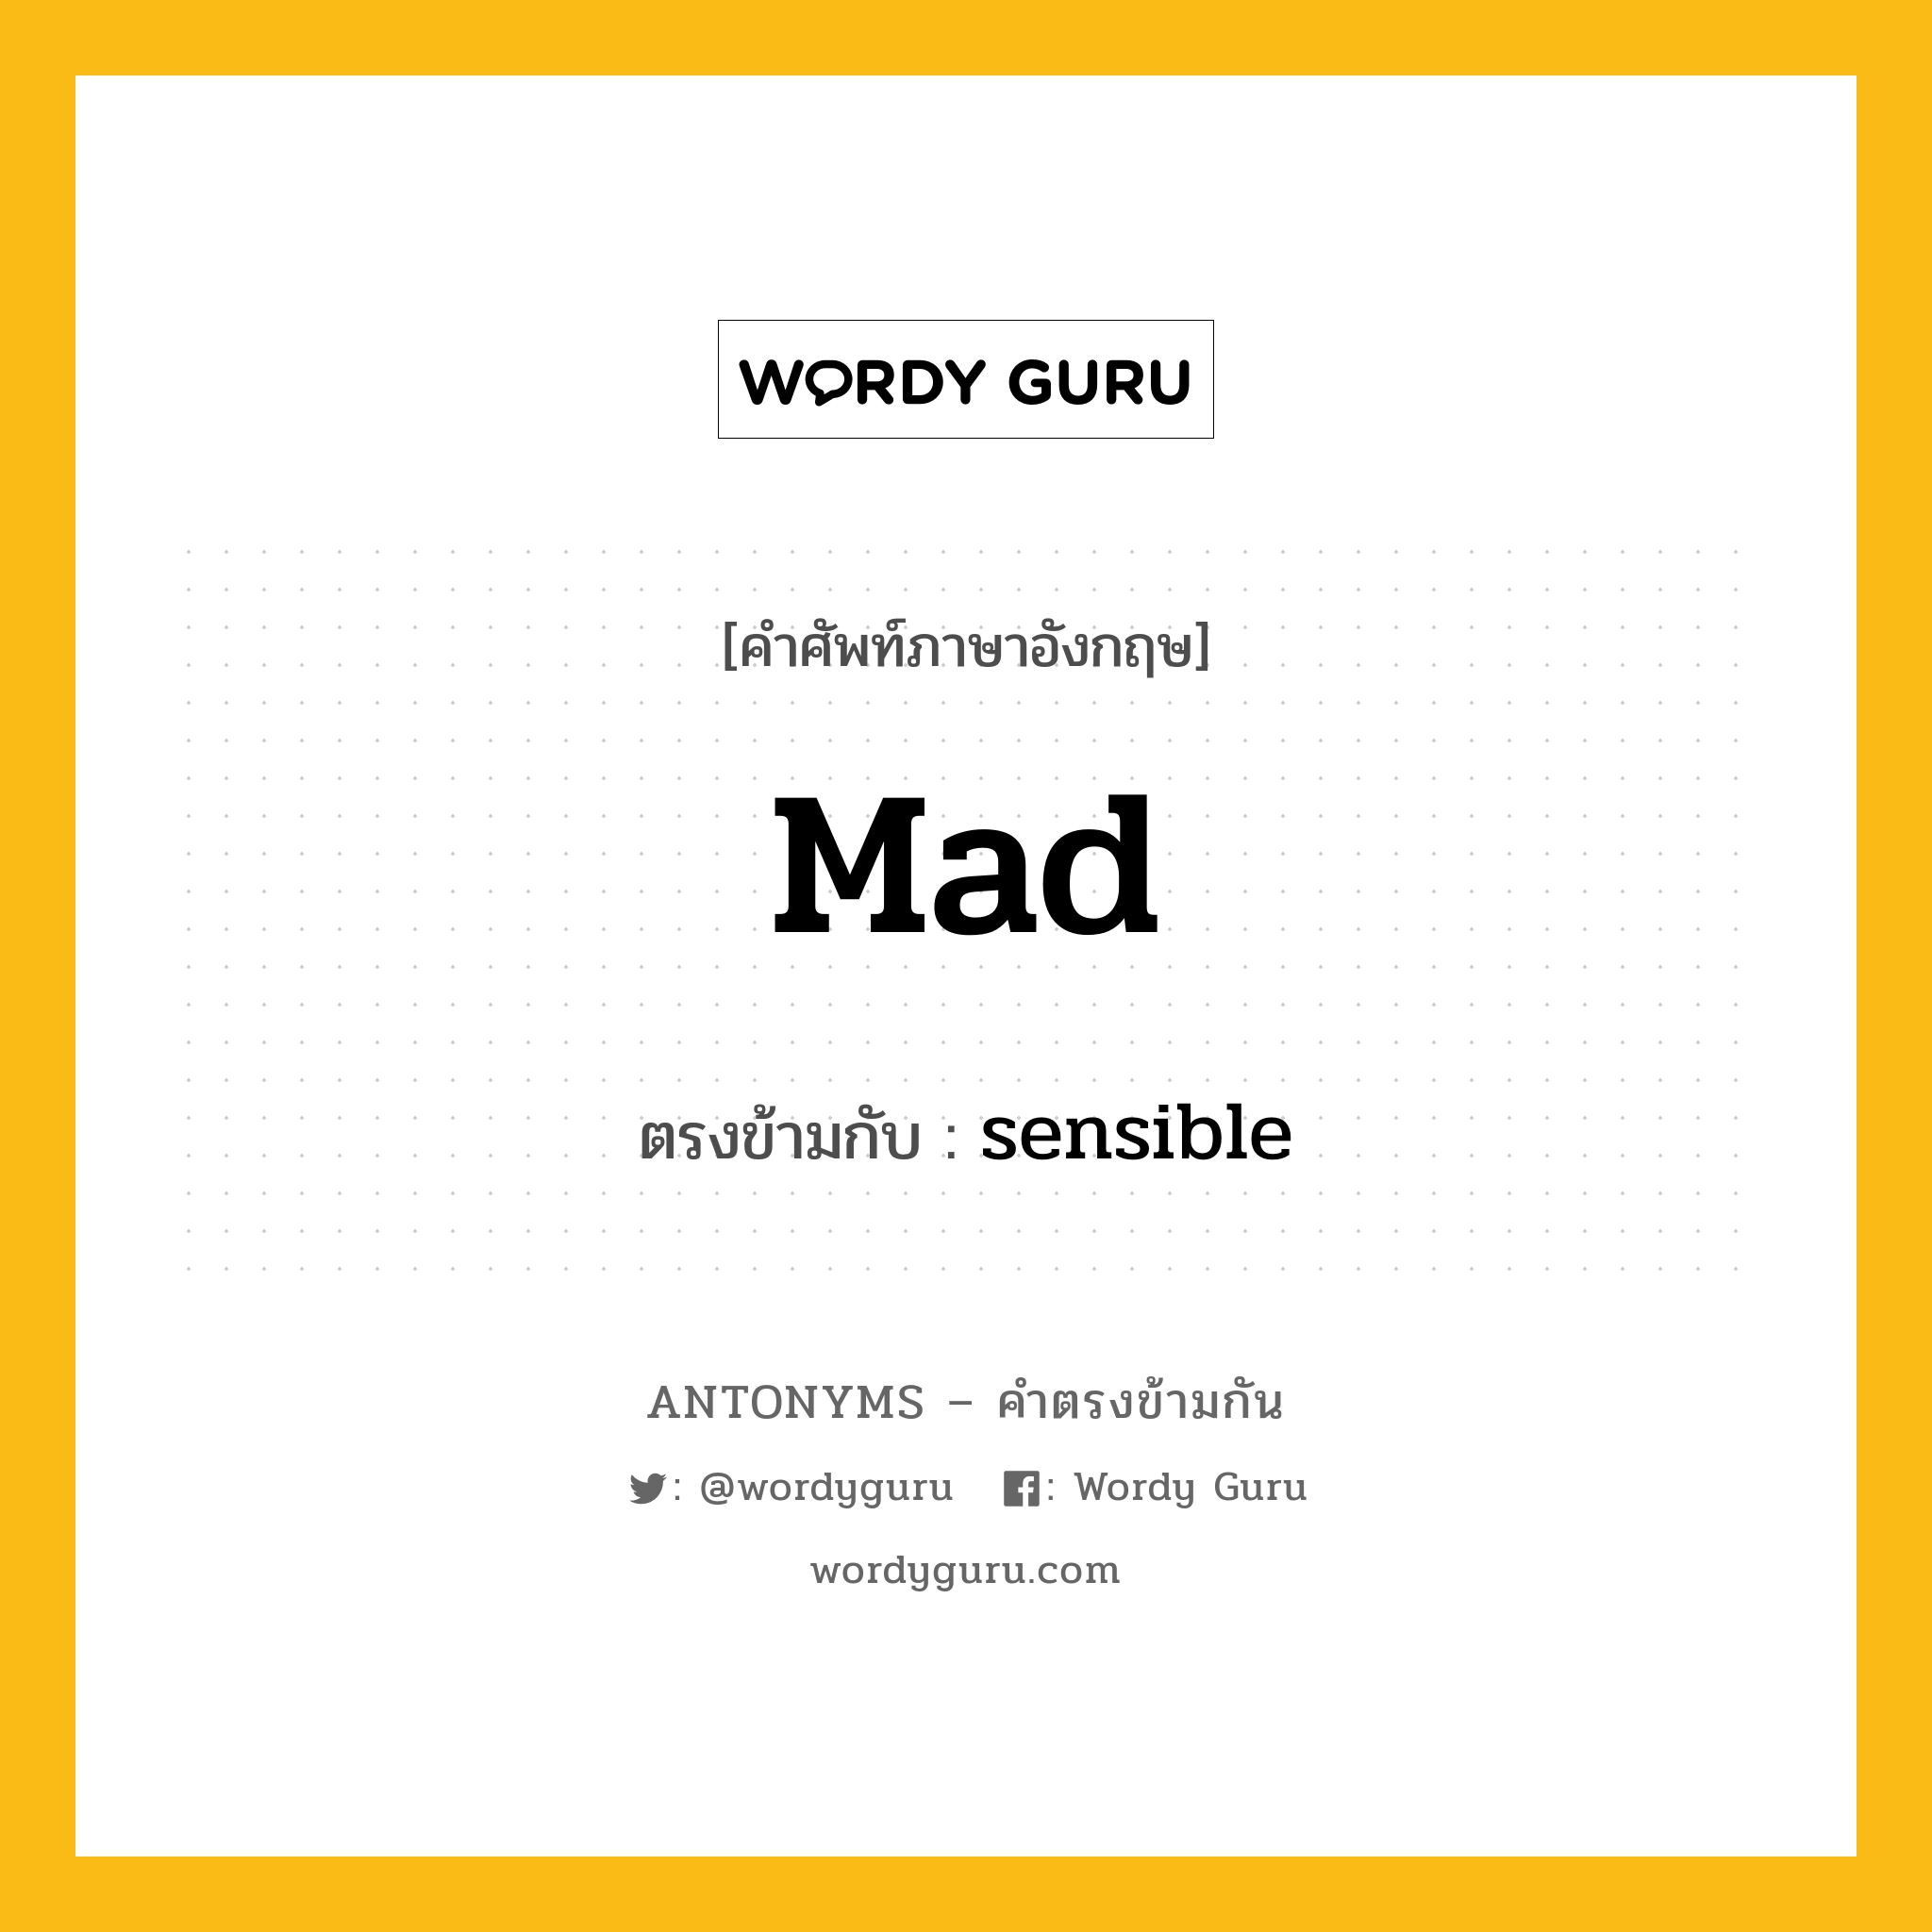 mad เป็นคำตรงข้ามกับคำไหนบ้าง?, คำศัพท์ภาษาอังกฤษ mad ตรงข้ามกับ sensible หมวด sensible